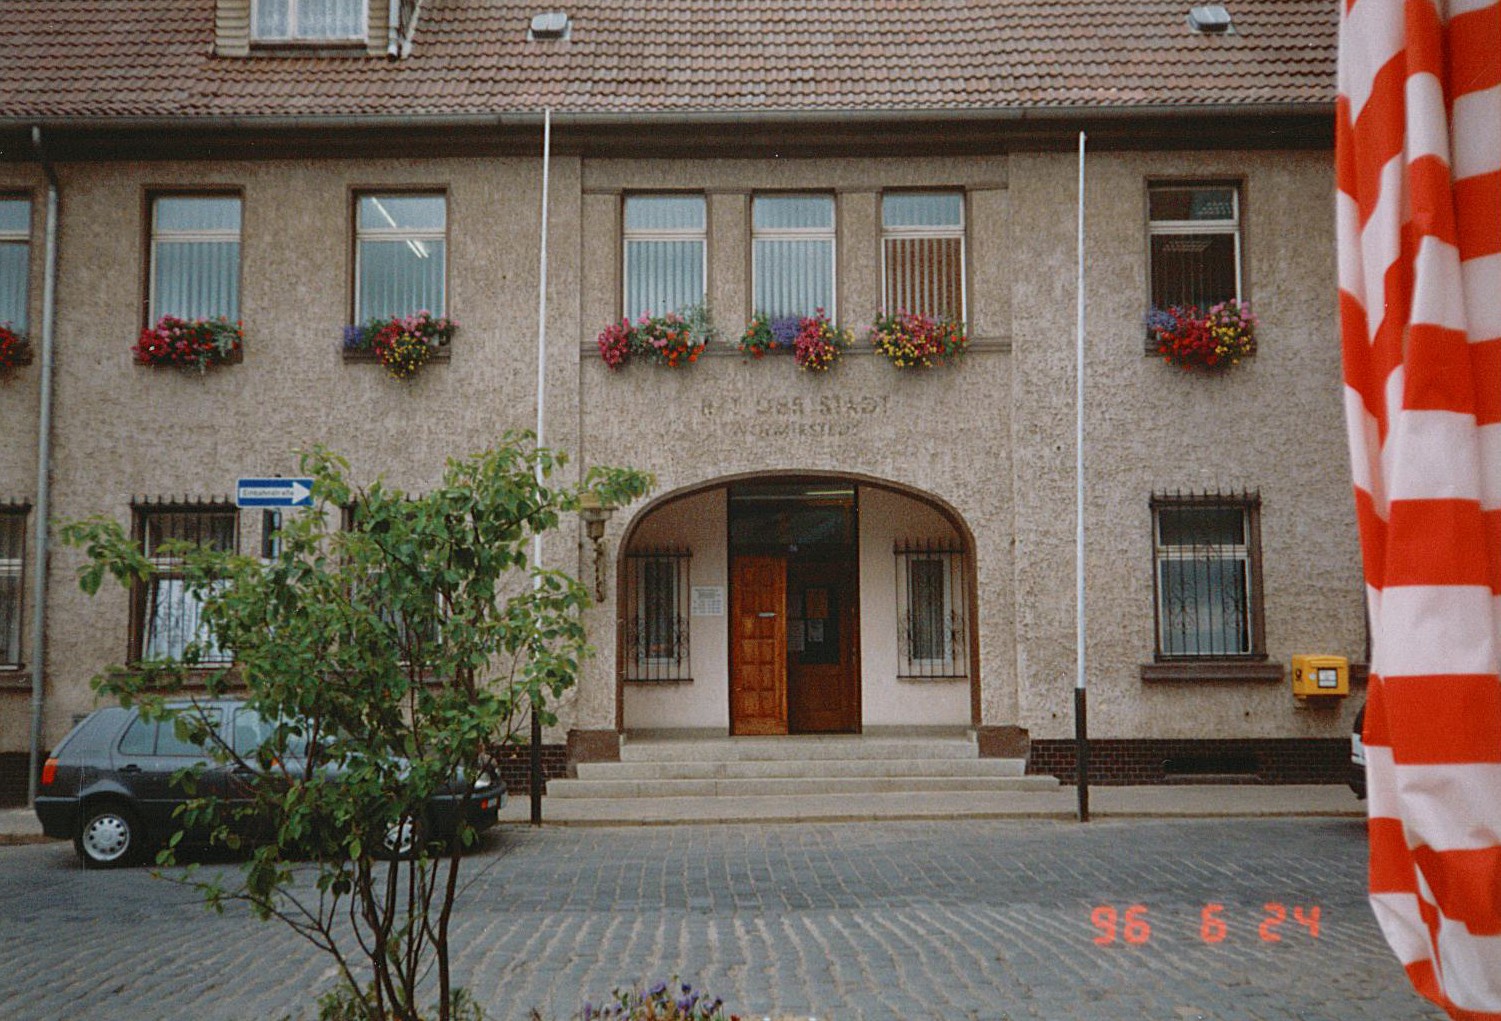 Stadtansicht Wolmirstedt - Rat der Stadt, 24.06.1996 (Museum Wolmirstedt RR-F)